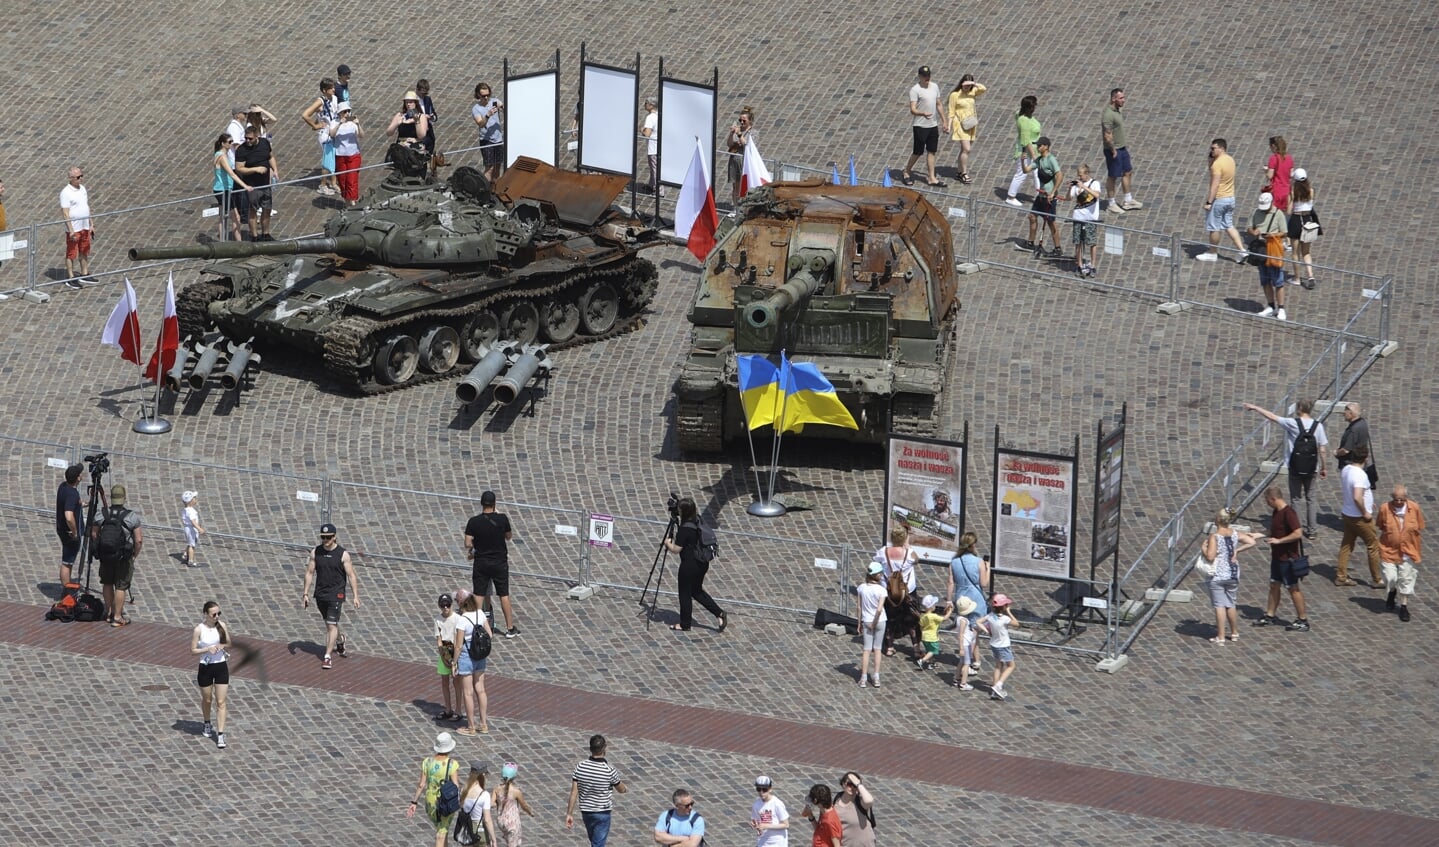 Toeristen lopen langs het vernietigde Russische oorlogstuig dat tentoongesteld staat in het centrum van Warschau.